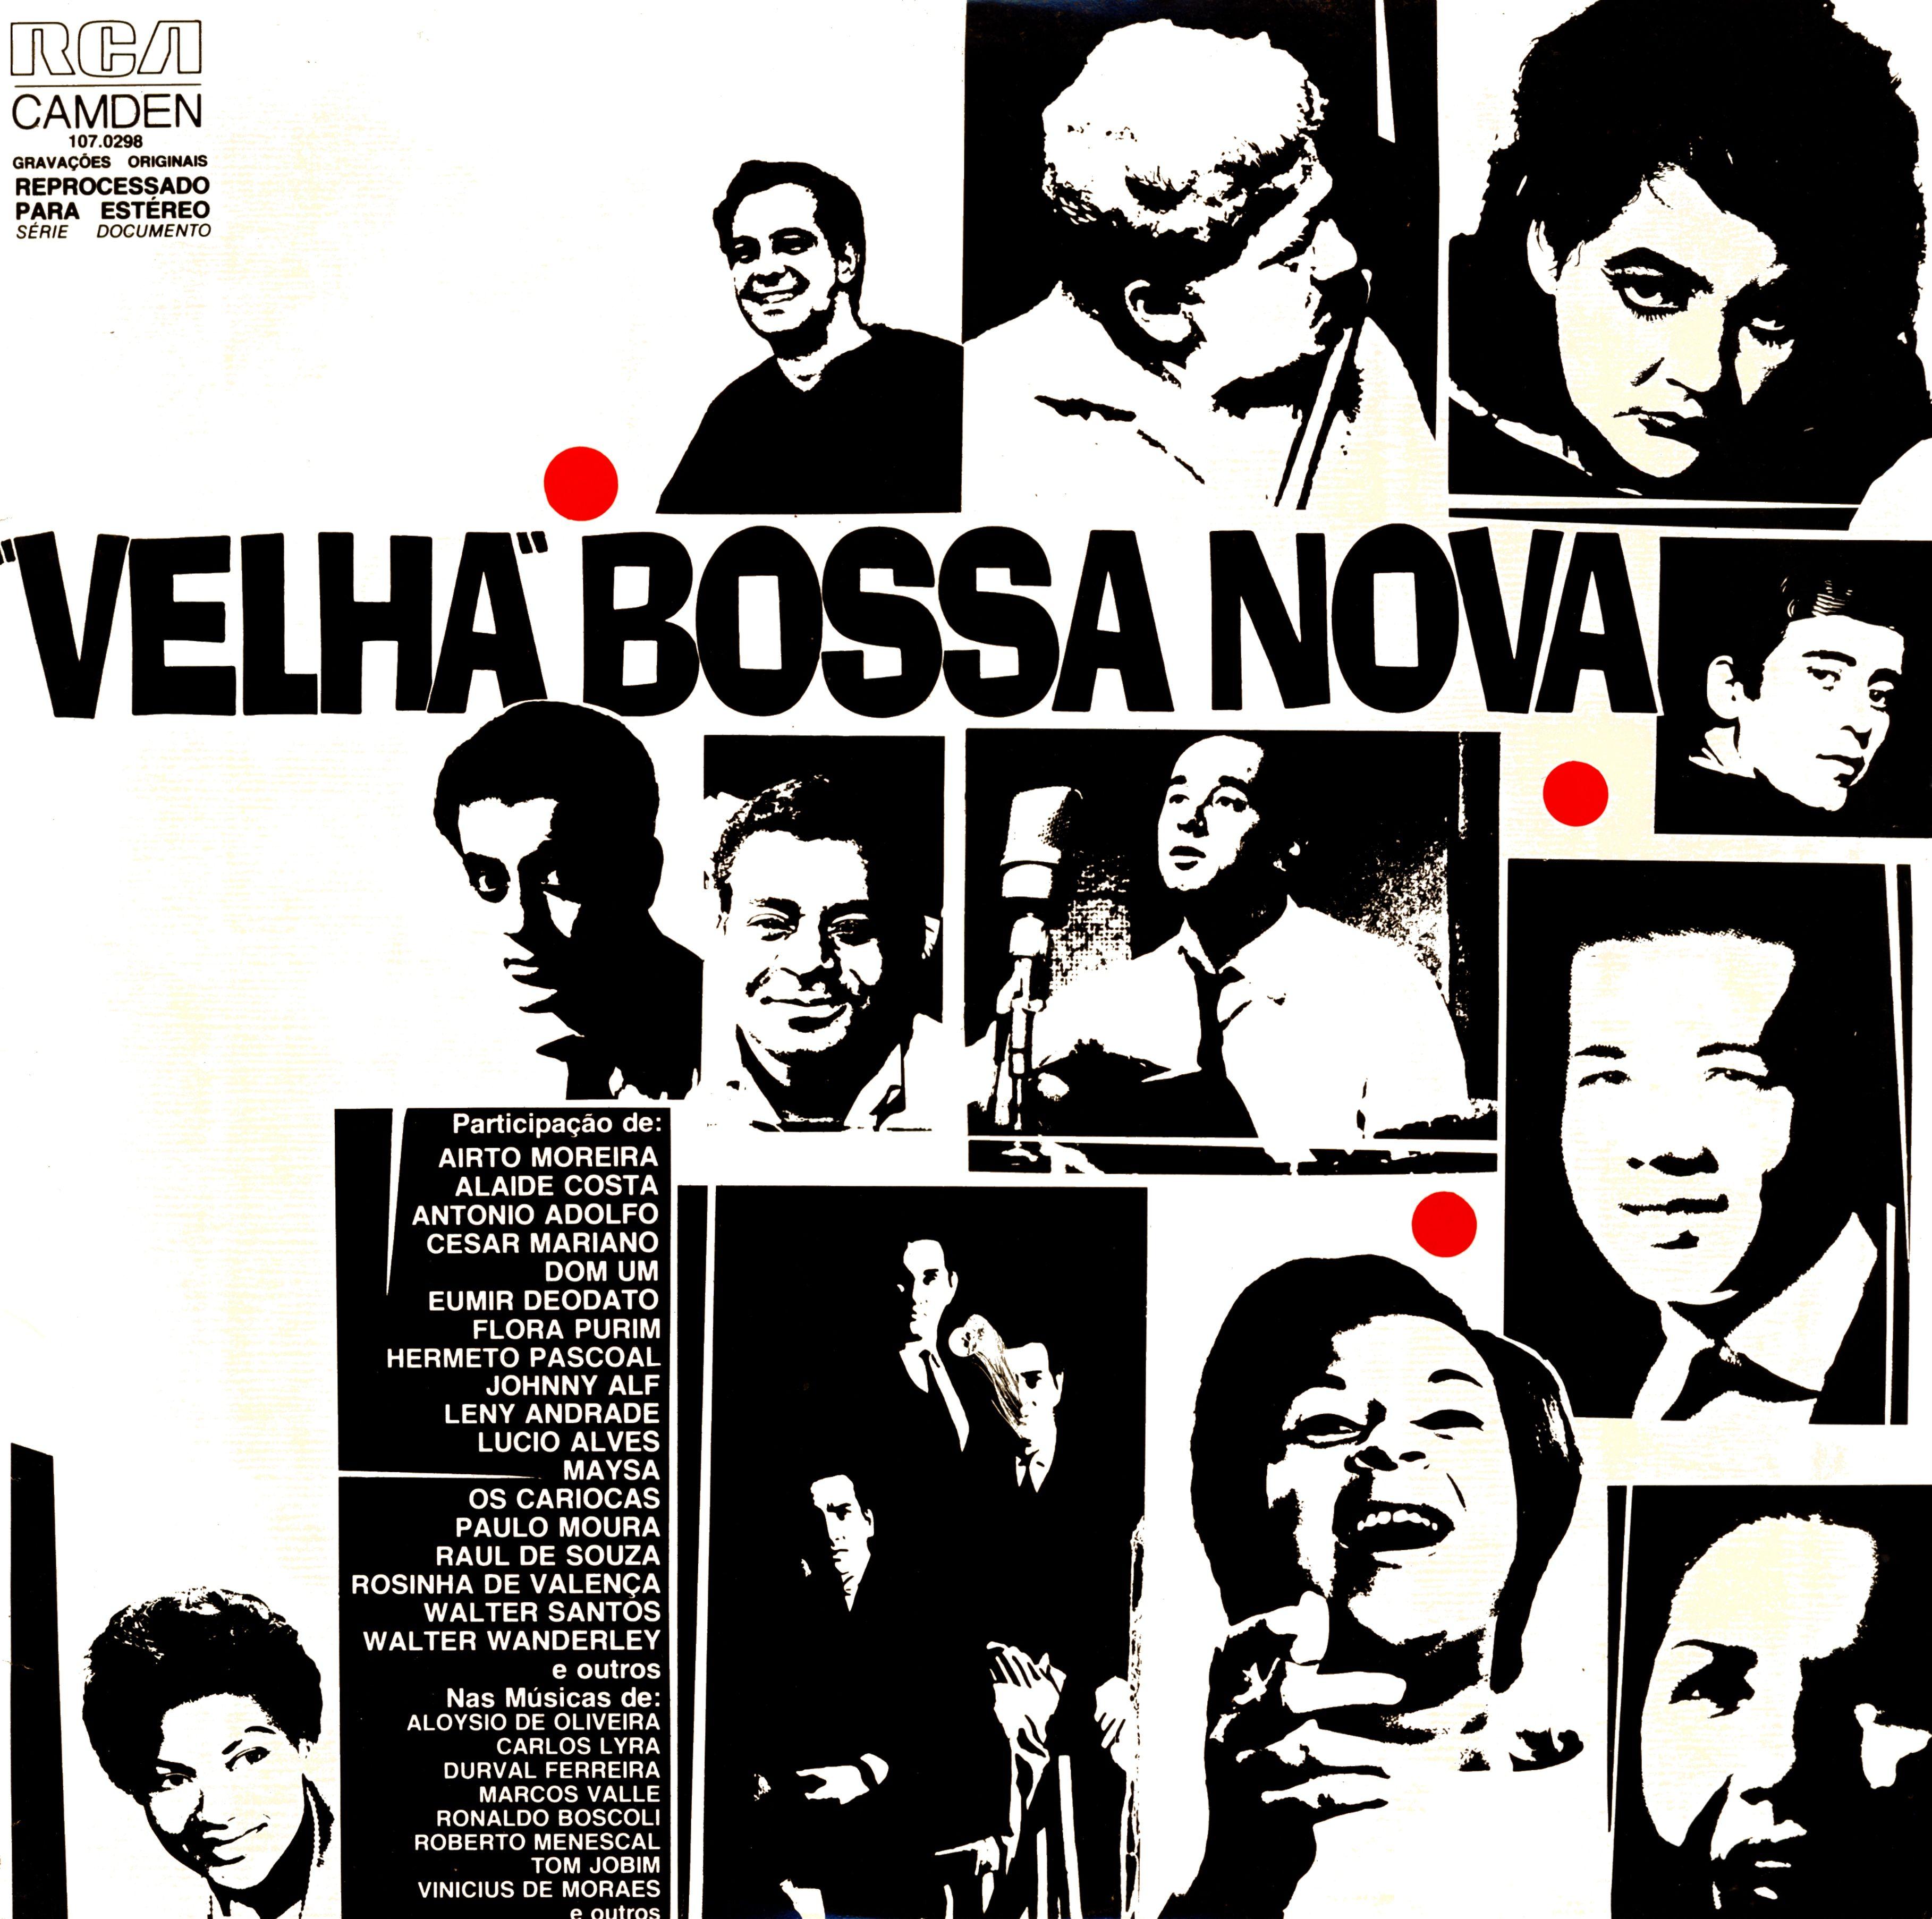 Bossa Nova Wallpapers